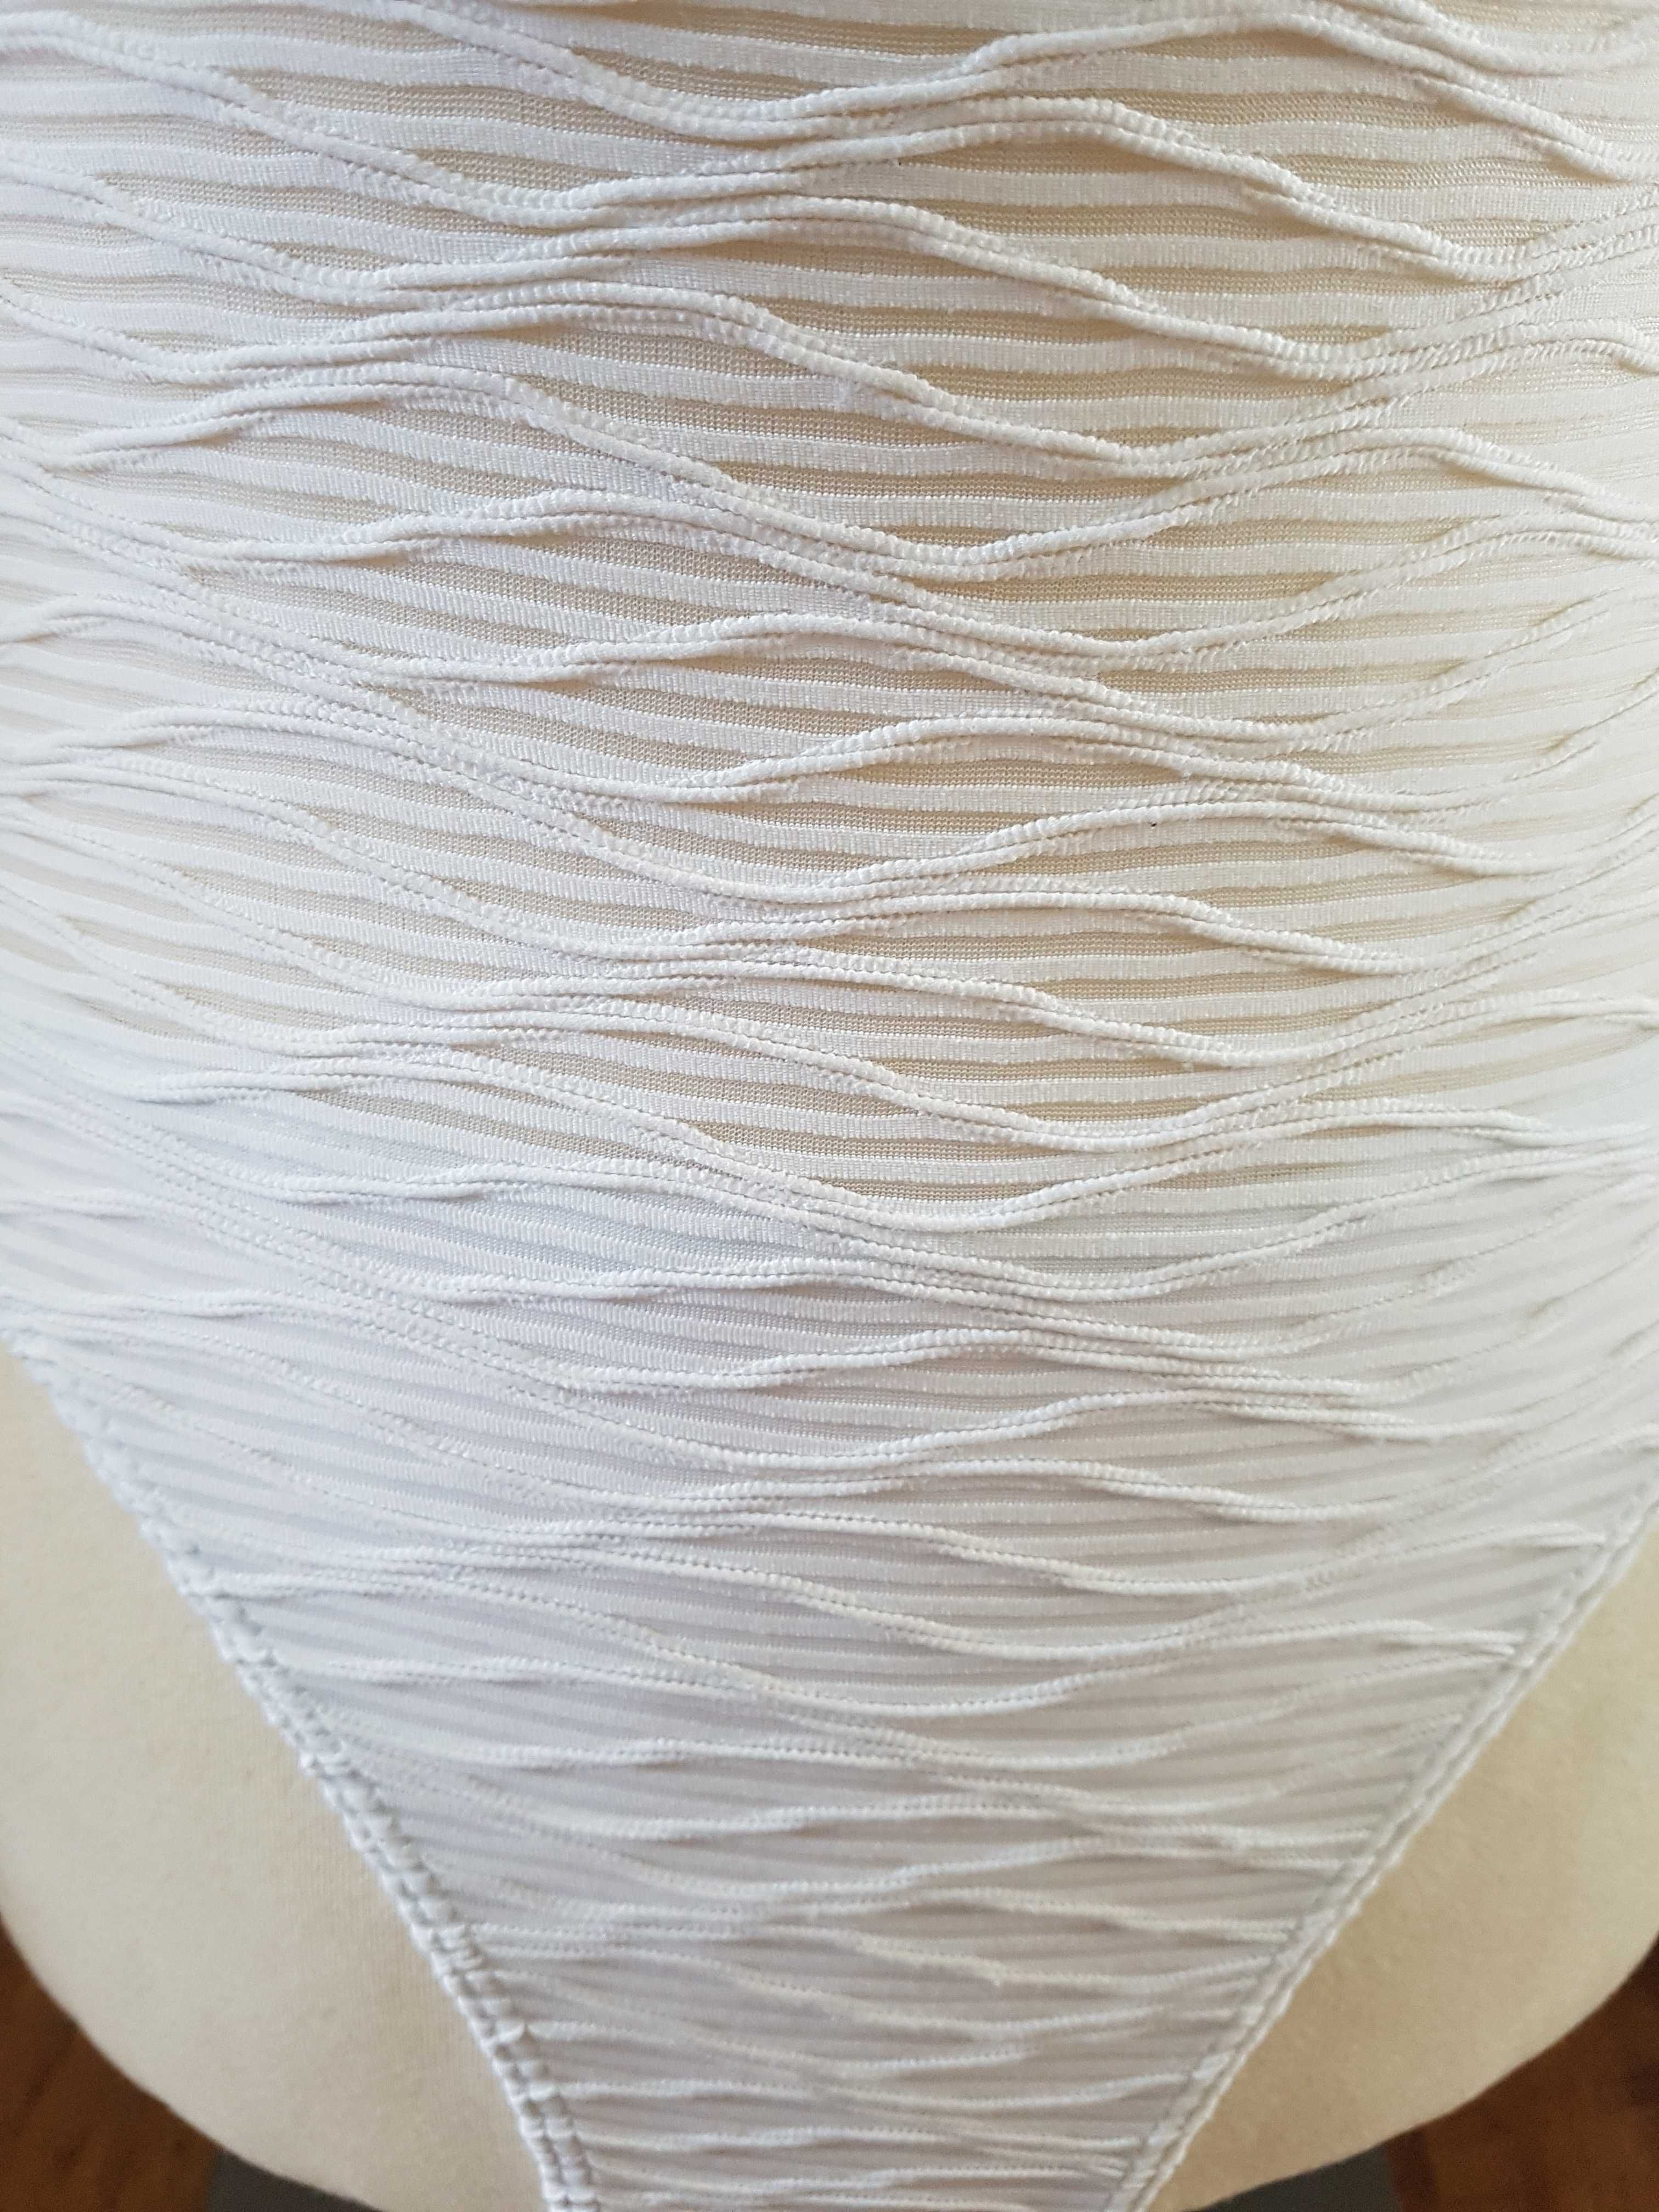 Kostium kąpielowy Morgan, biały ażurowy, rozm. 36/S